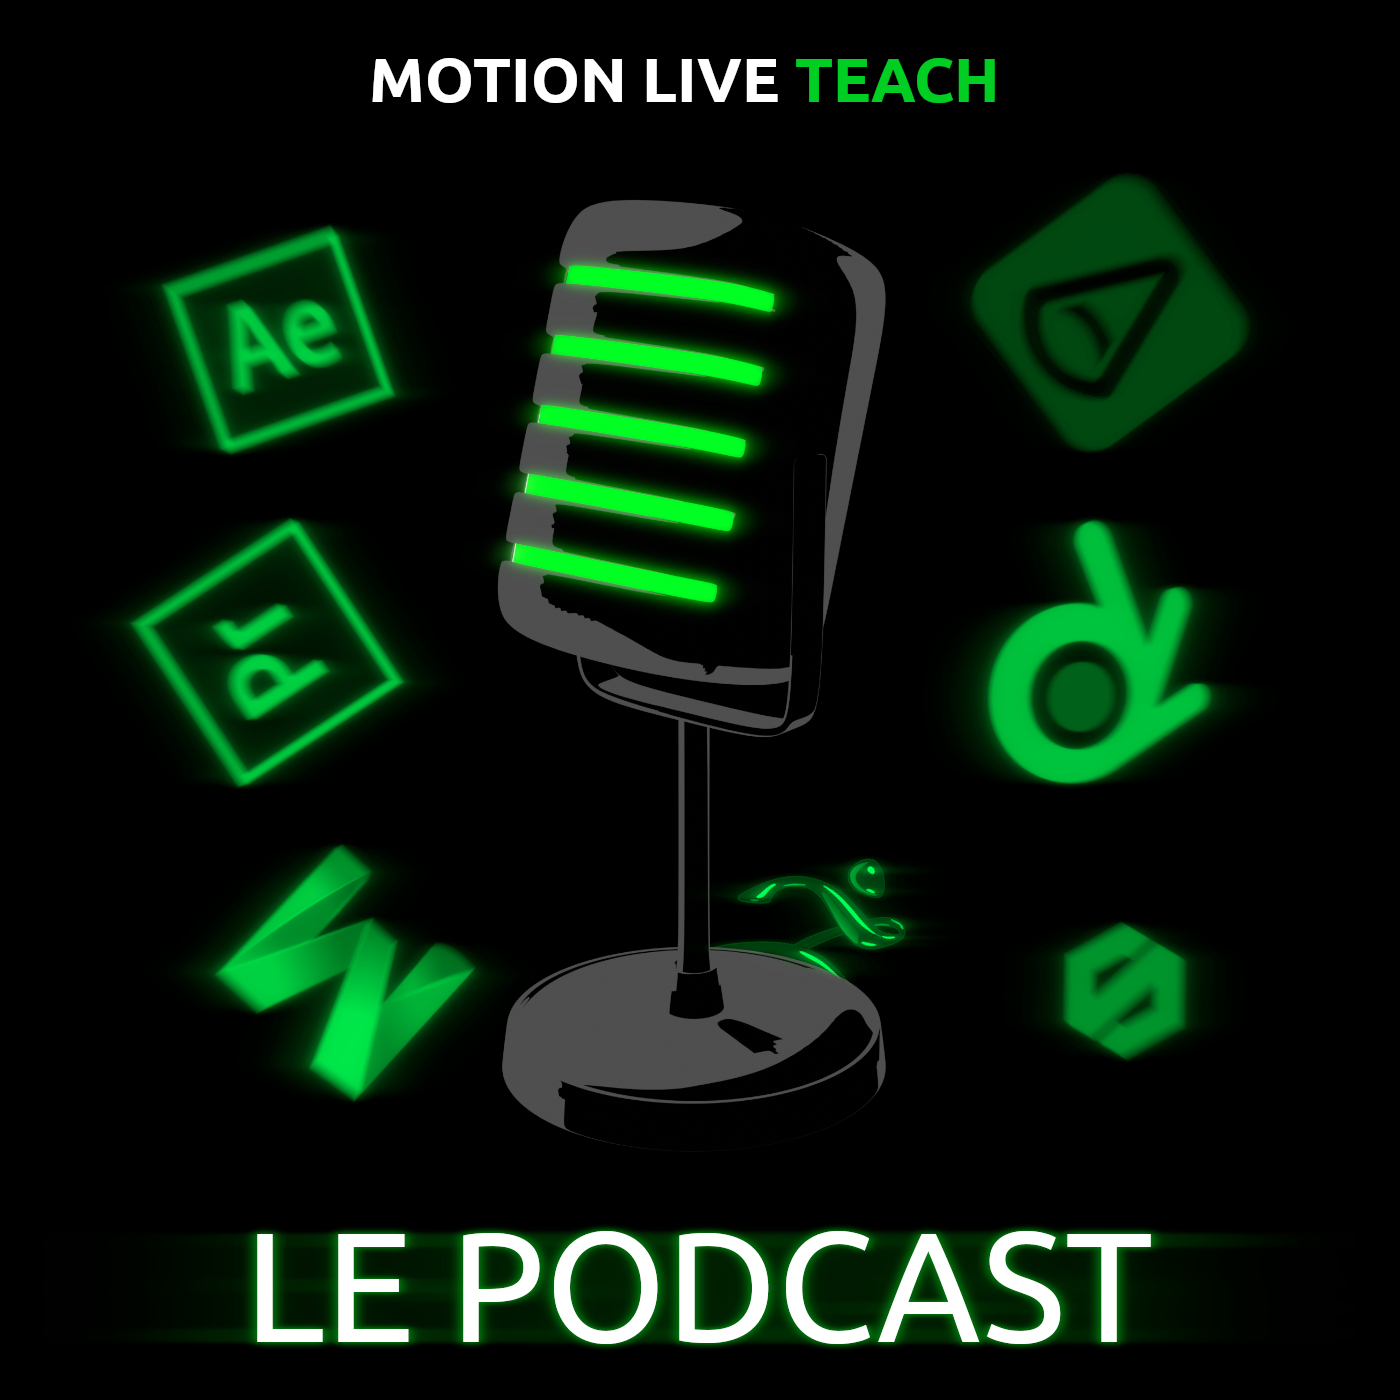 Le podcast de Motion Live Teach